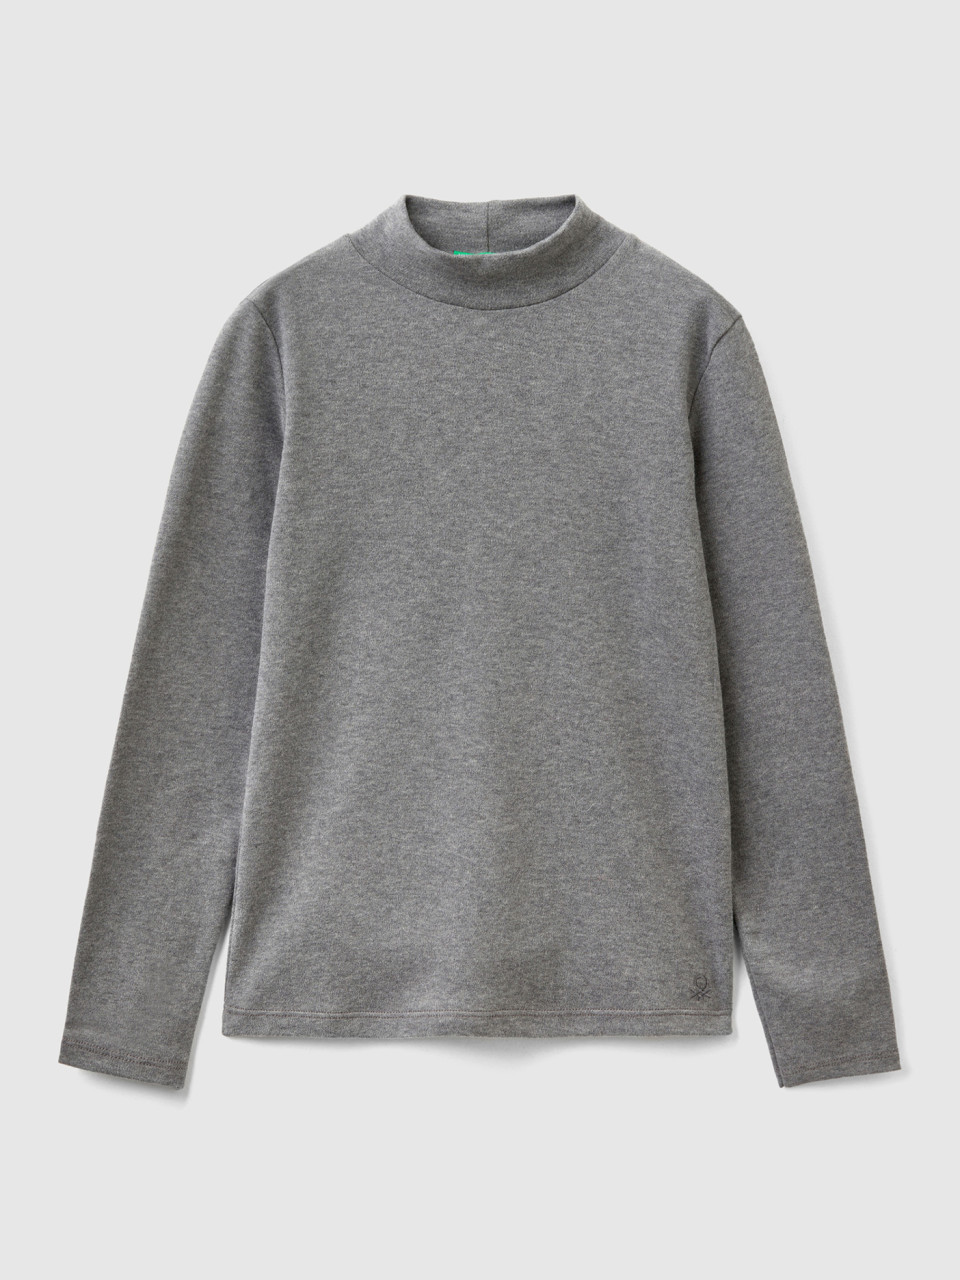 Benetton, T-shirt In Pure Organic Cotton, Dark Gray, Kids